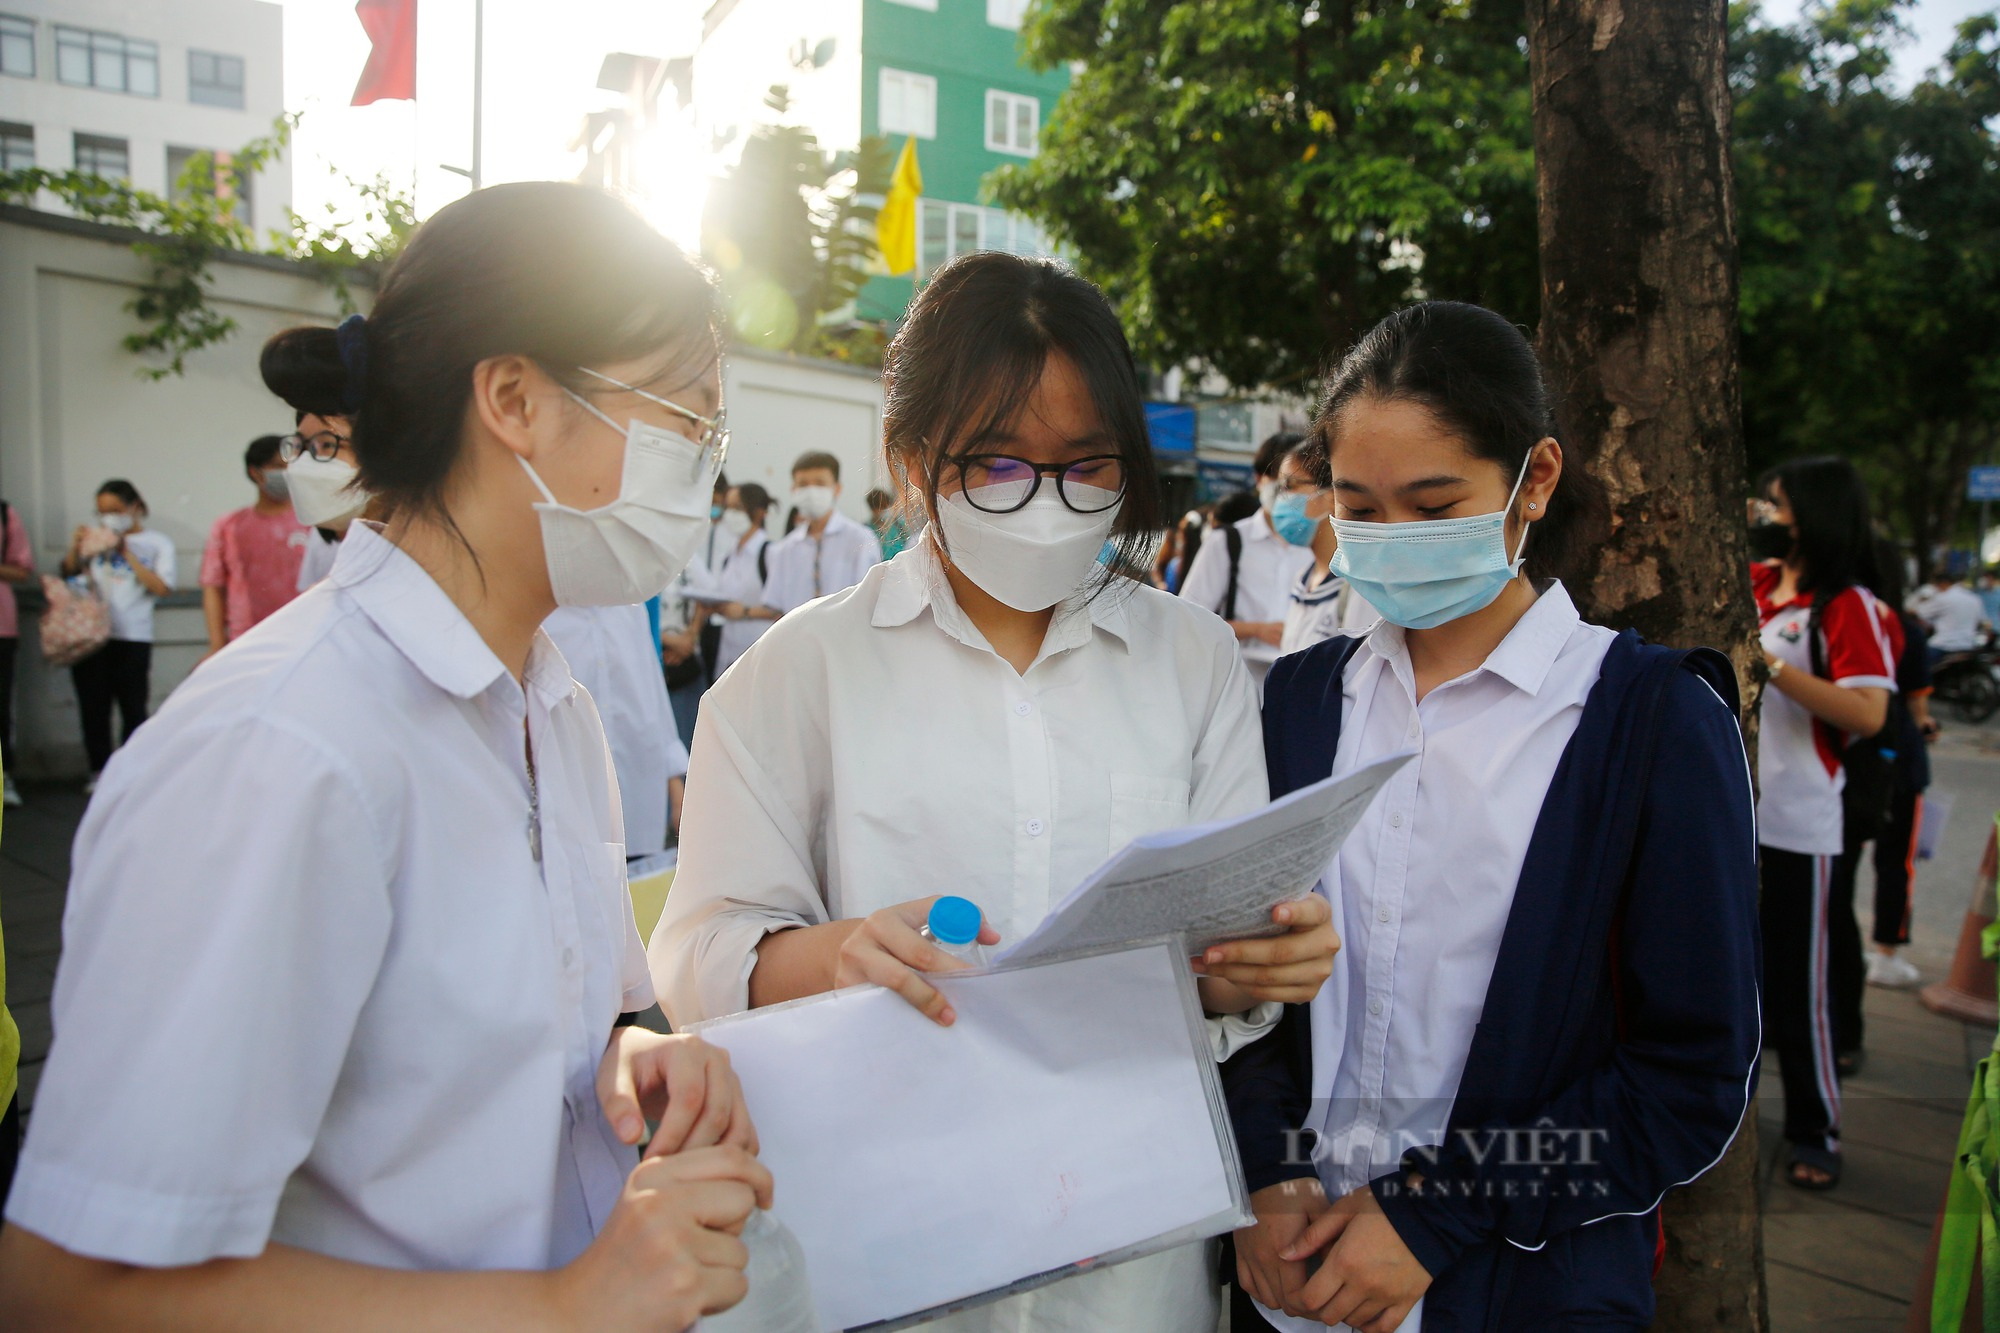 Chỉ tiêu tuyển sinh của trường hot ở Hà Nội - Trường THCS&THPT Nguyễn Tất Thành - Ảnh 1.